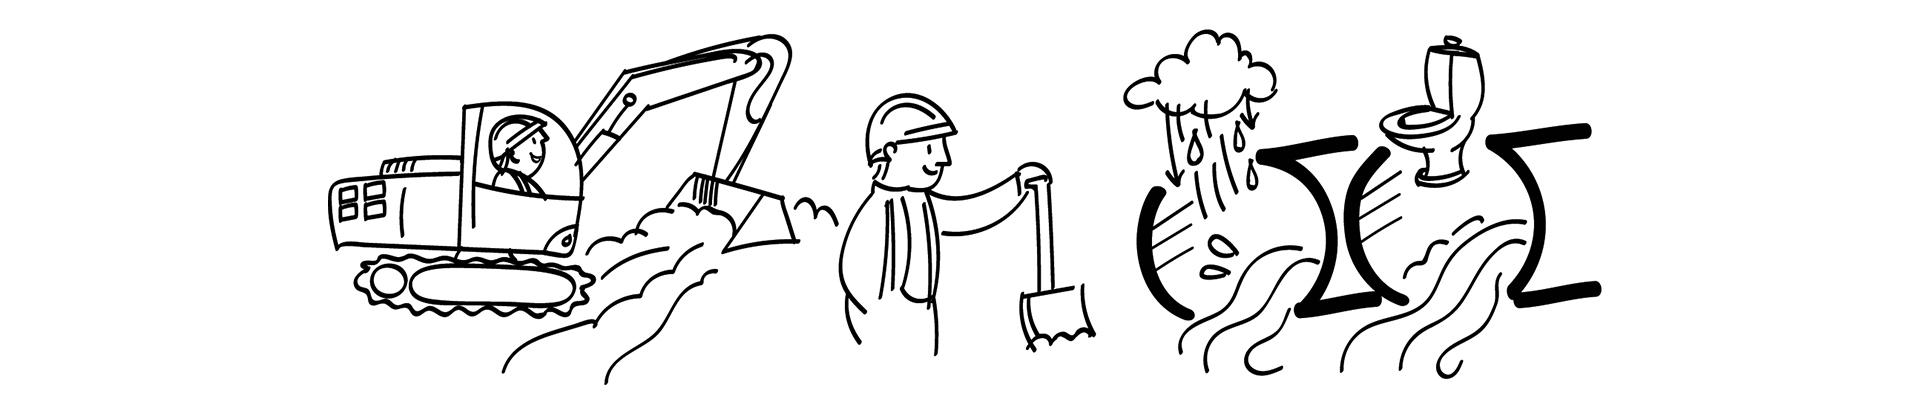 Tegning og illustration af separatkloakering med gravemaskine, og kloakrør